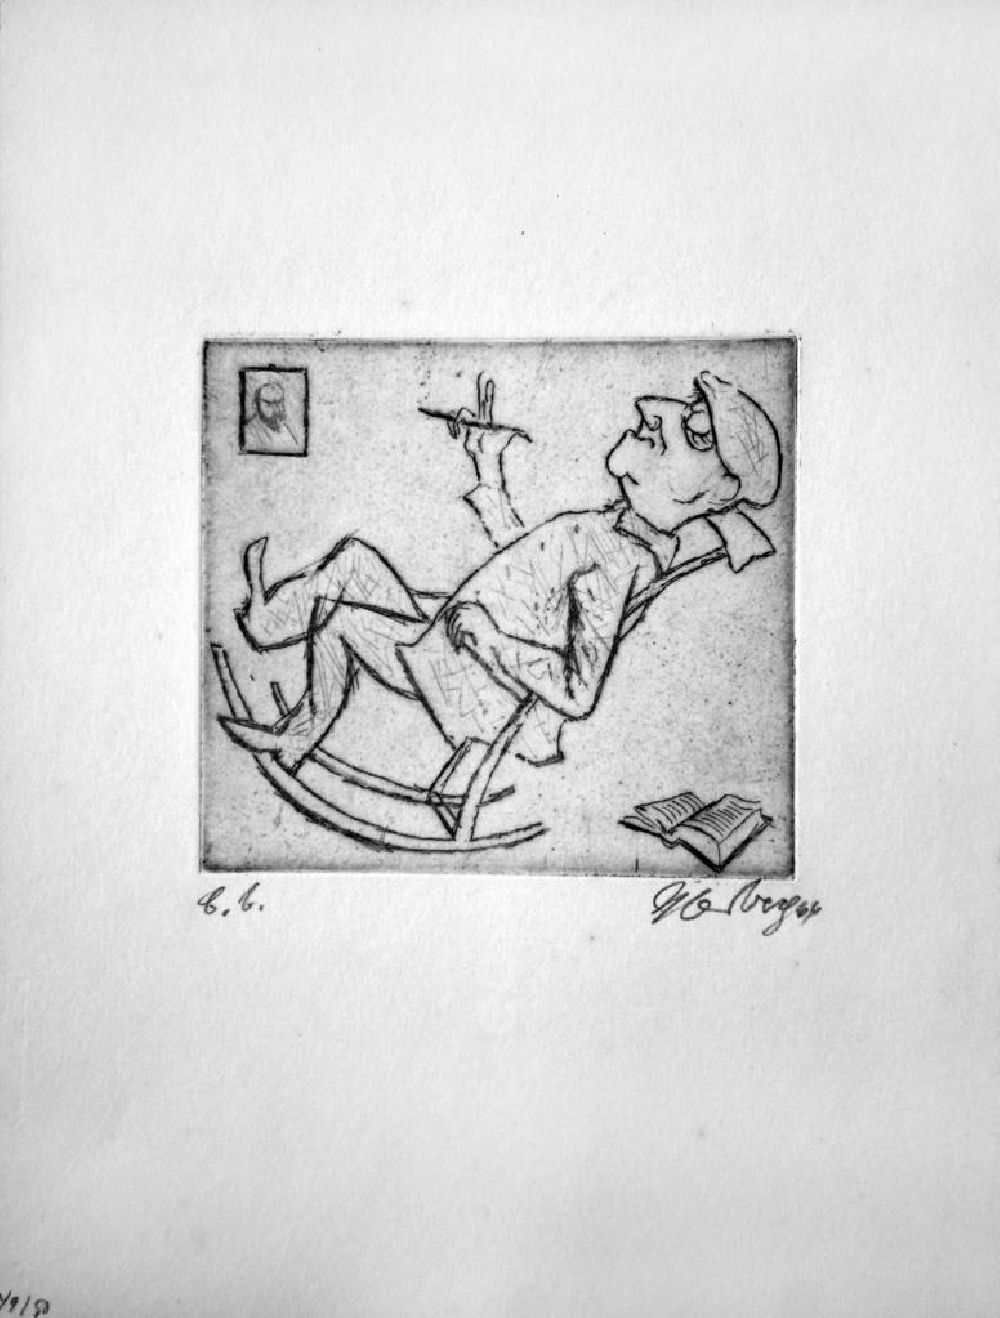 GDR picture archive: Berlin - Grafik von Herbert Sandberg über Bertolt Brecht (*10.02.1898 †14.08.1956) b.b. aus dem Jahr 1964 (Brecht im Schaukelstuhl), 11,0x10,0cm Radierung, handsigniert, 49/5